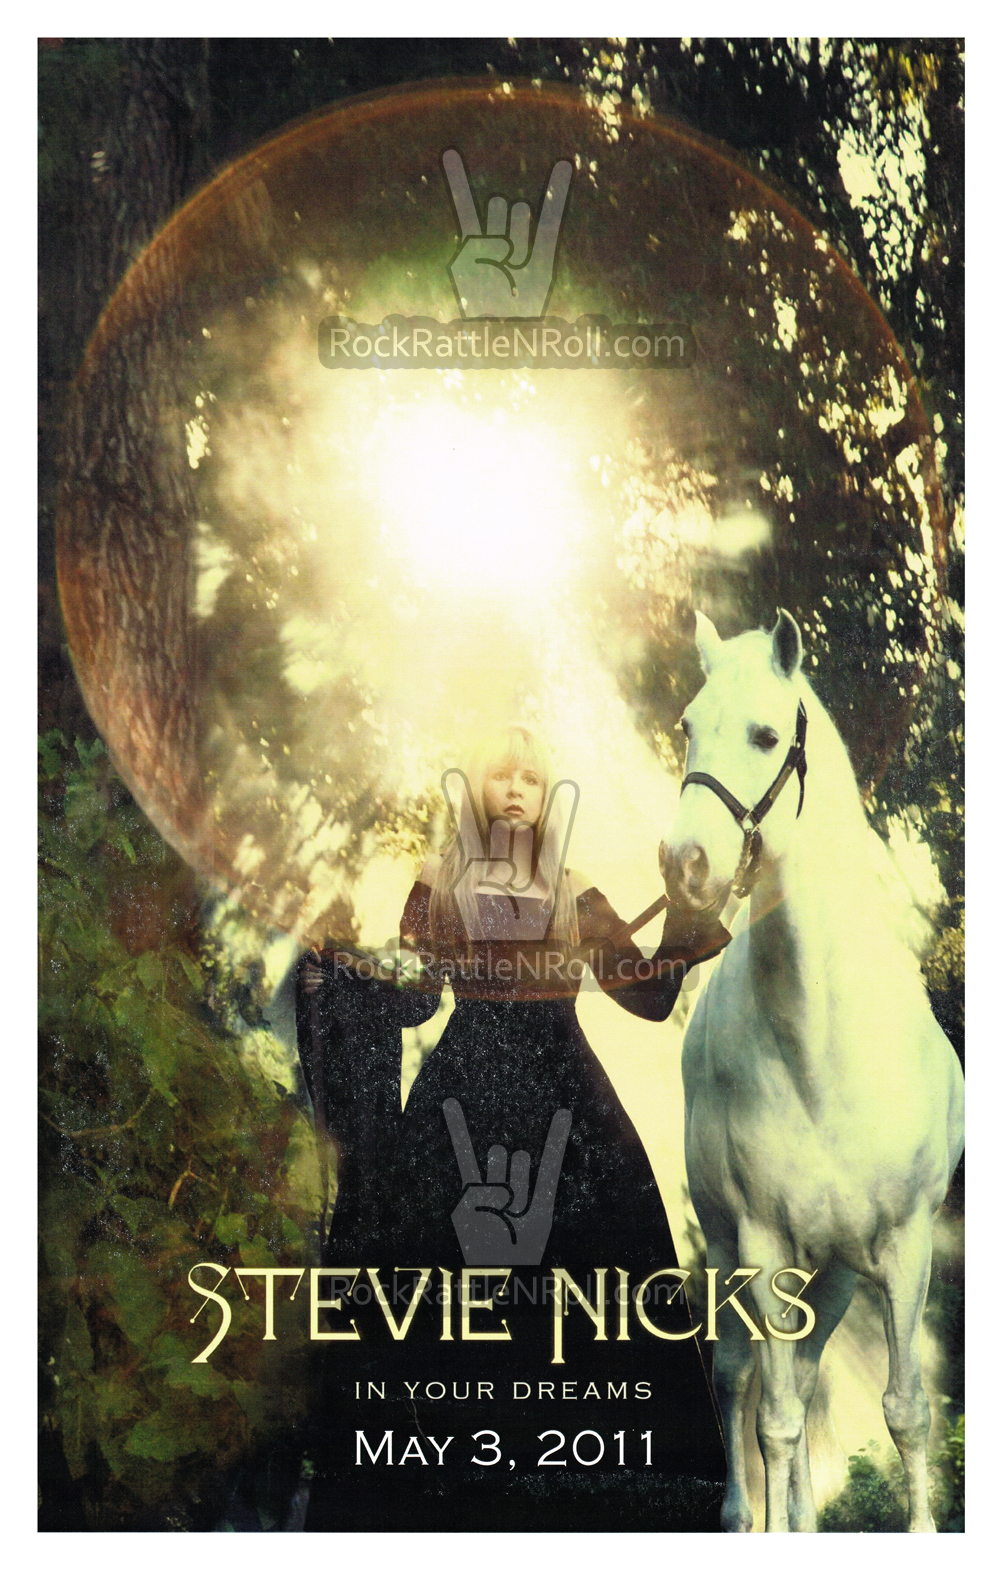 Stevie Nicks - 2011 In Your Dreams Promo Album Poster